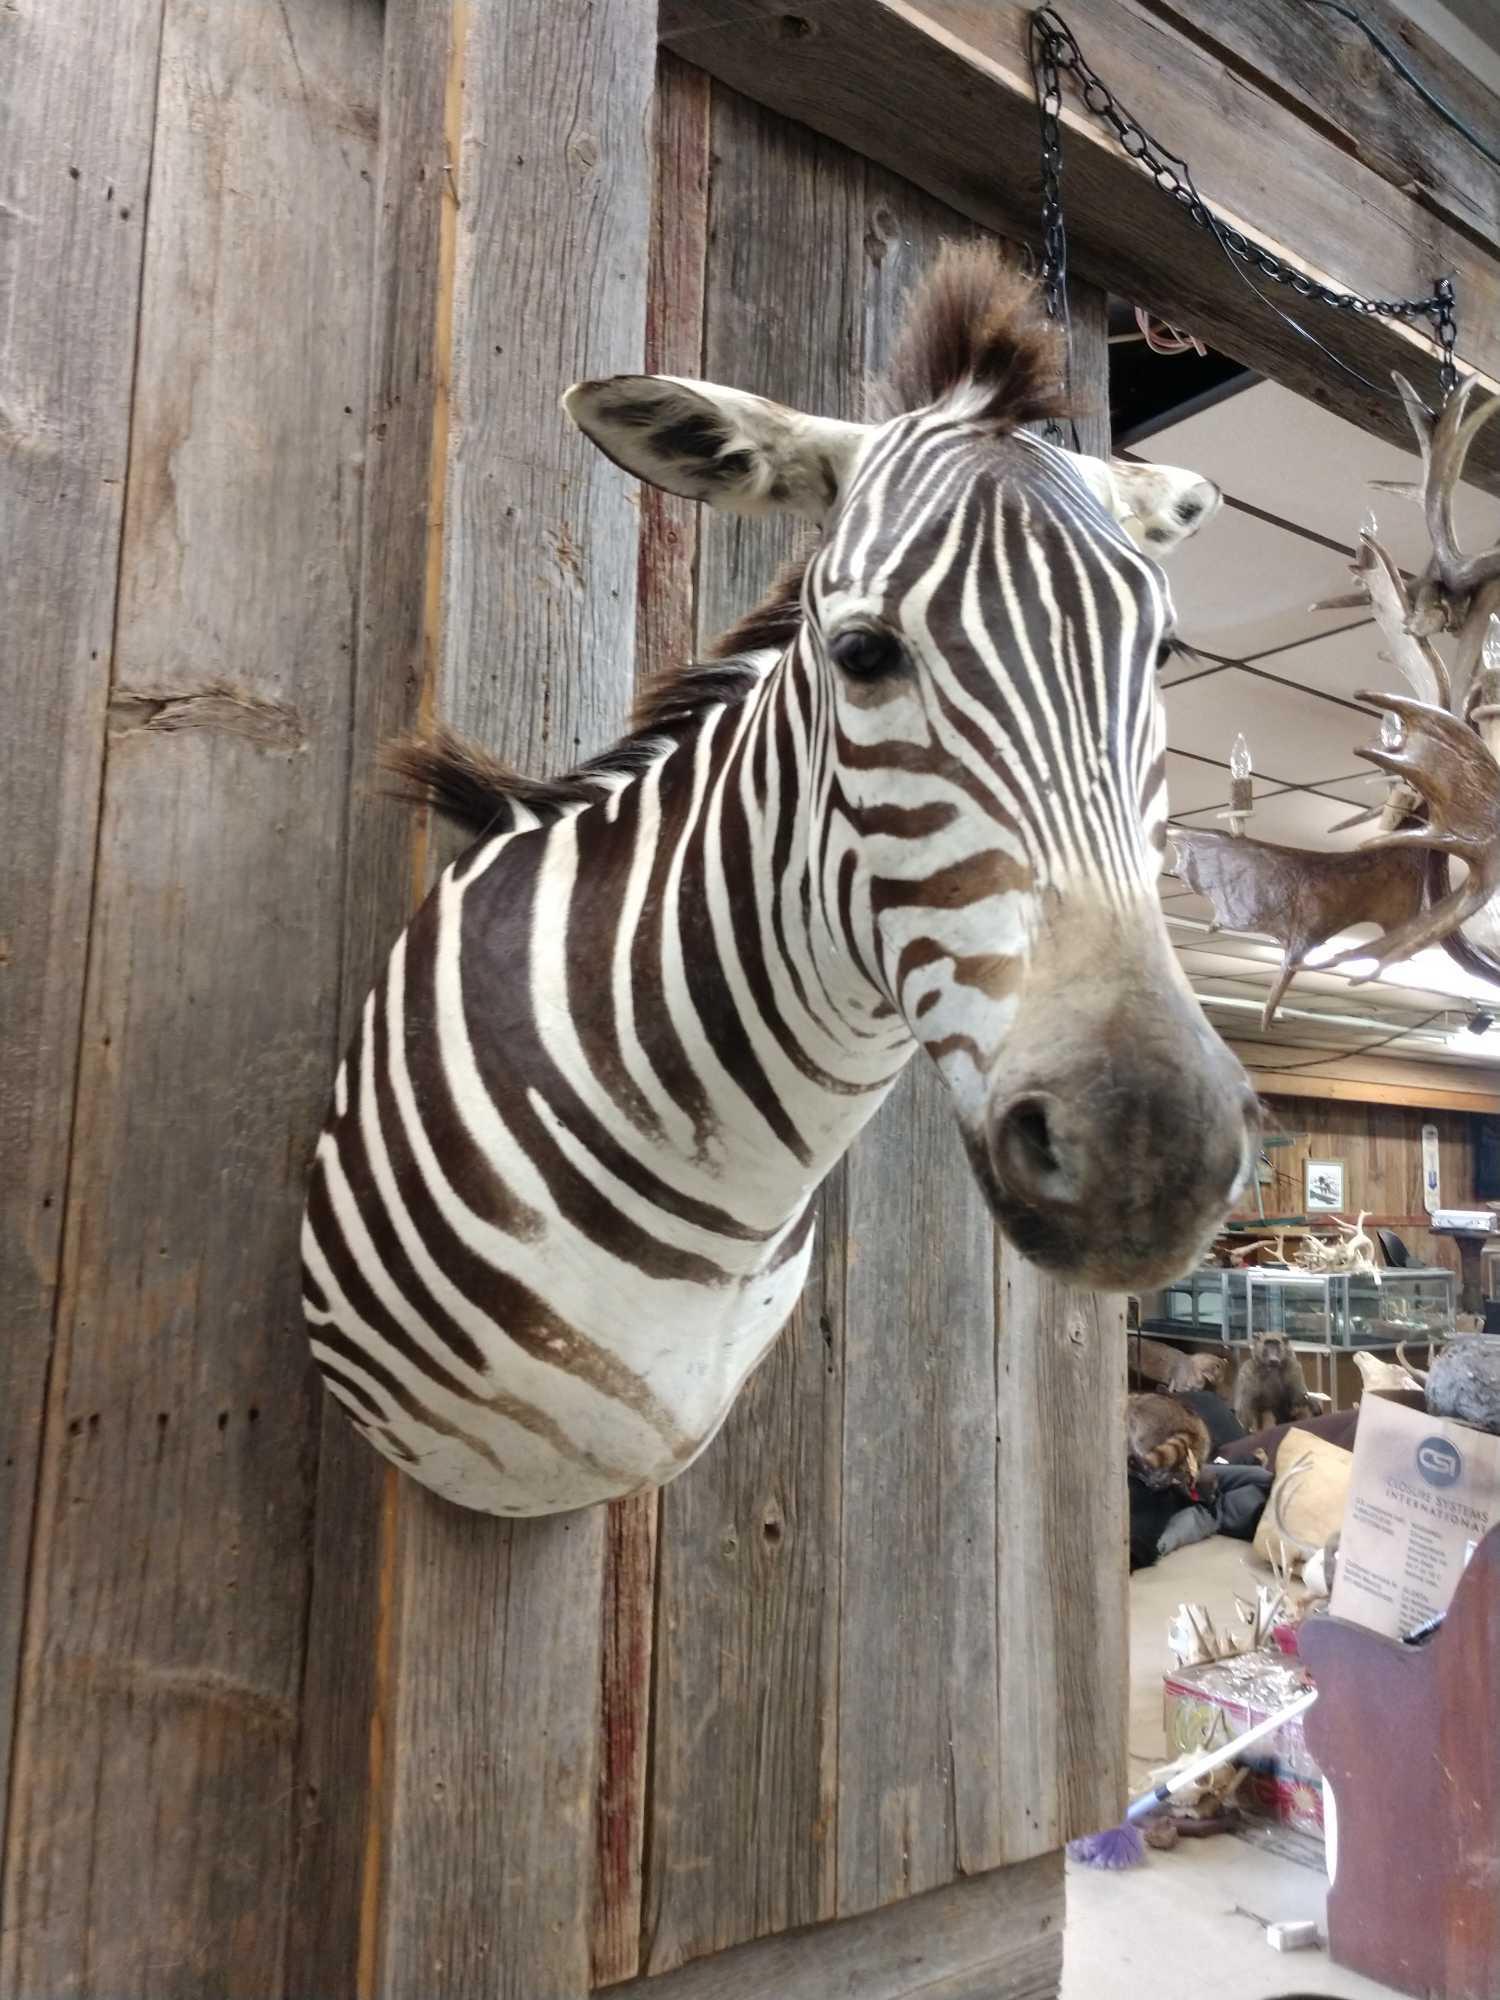 Zebra shoulder-mount